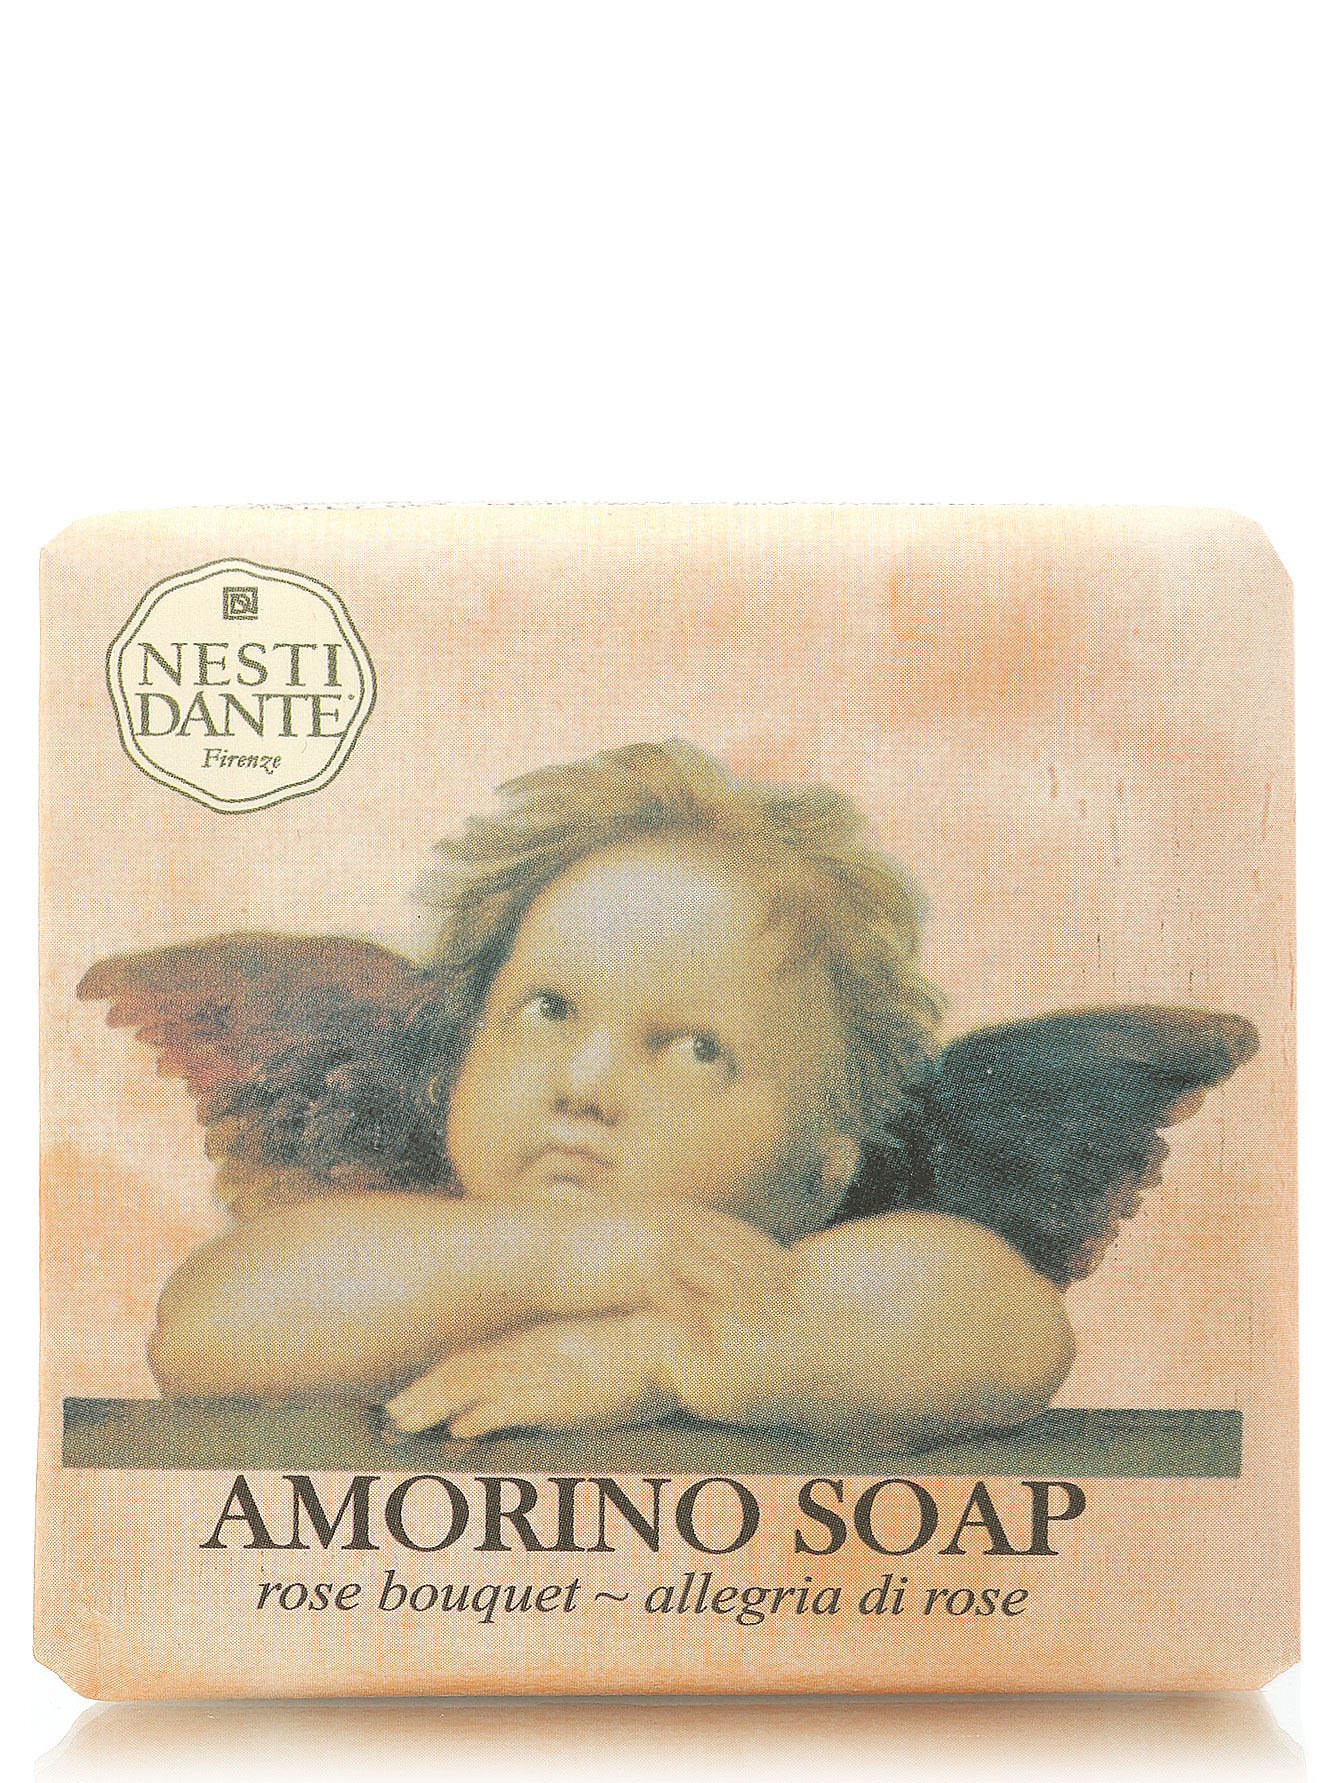 Мыло Amorino Soap, 150 г - Общий вид